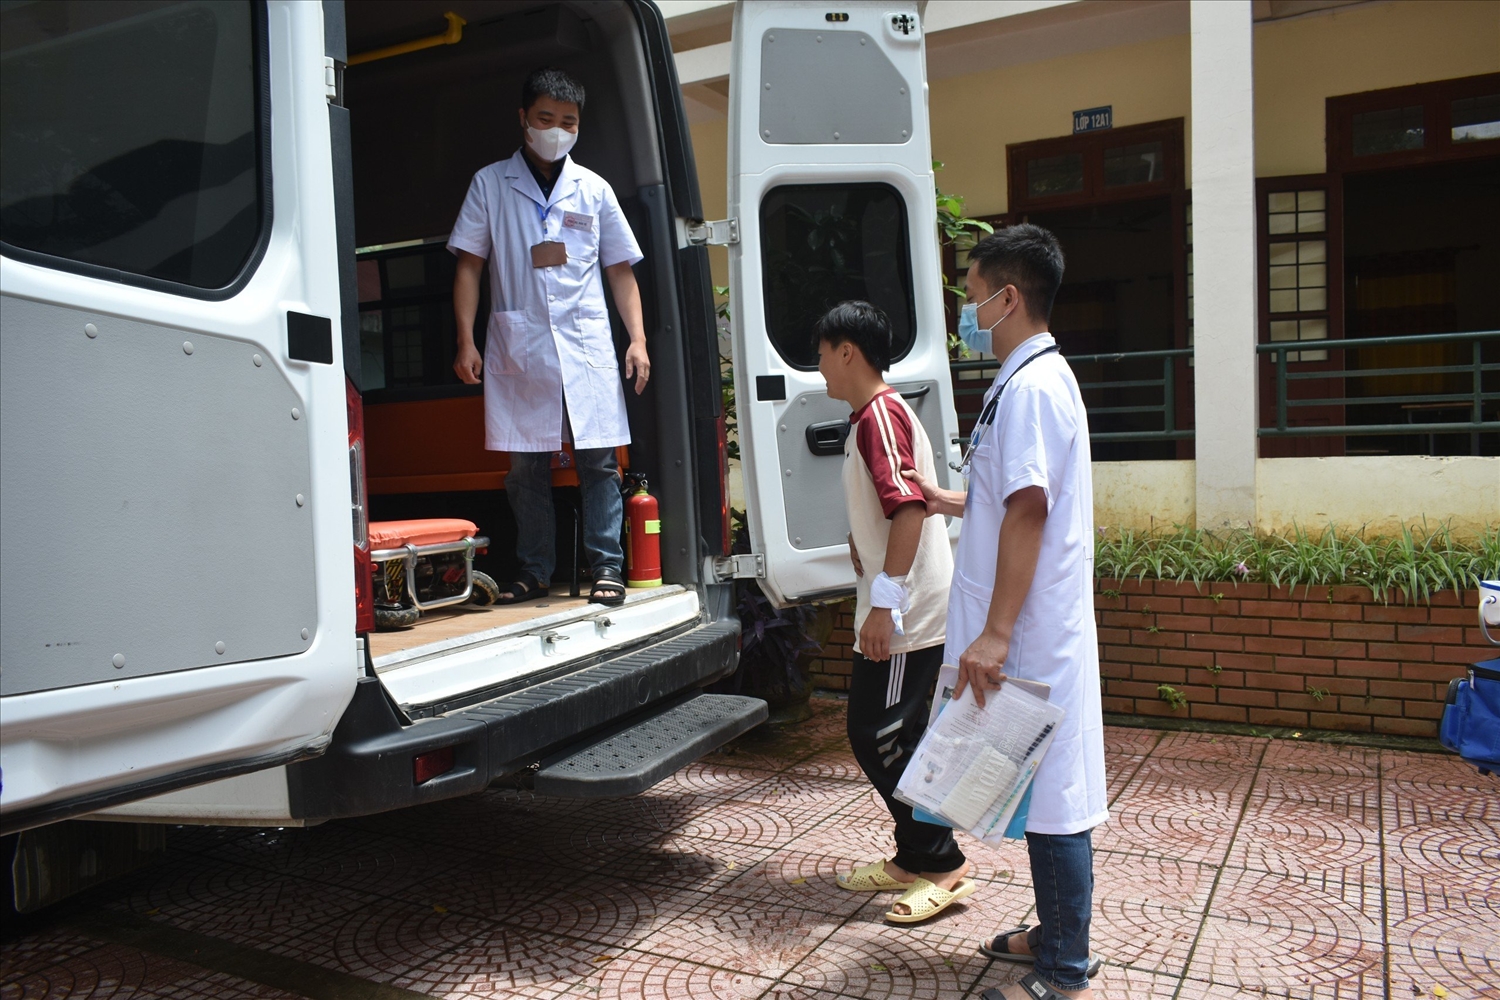 Em Hoàng Thị Loan - Học sinh lớp 12a2 của Trường THPT Pắc Khuông được các nhân viên y tế hỗ trợ, đưa đón đến điểm thi